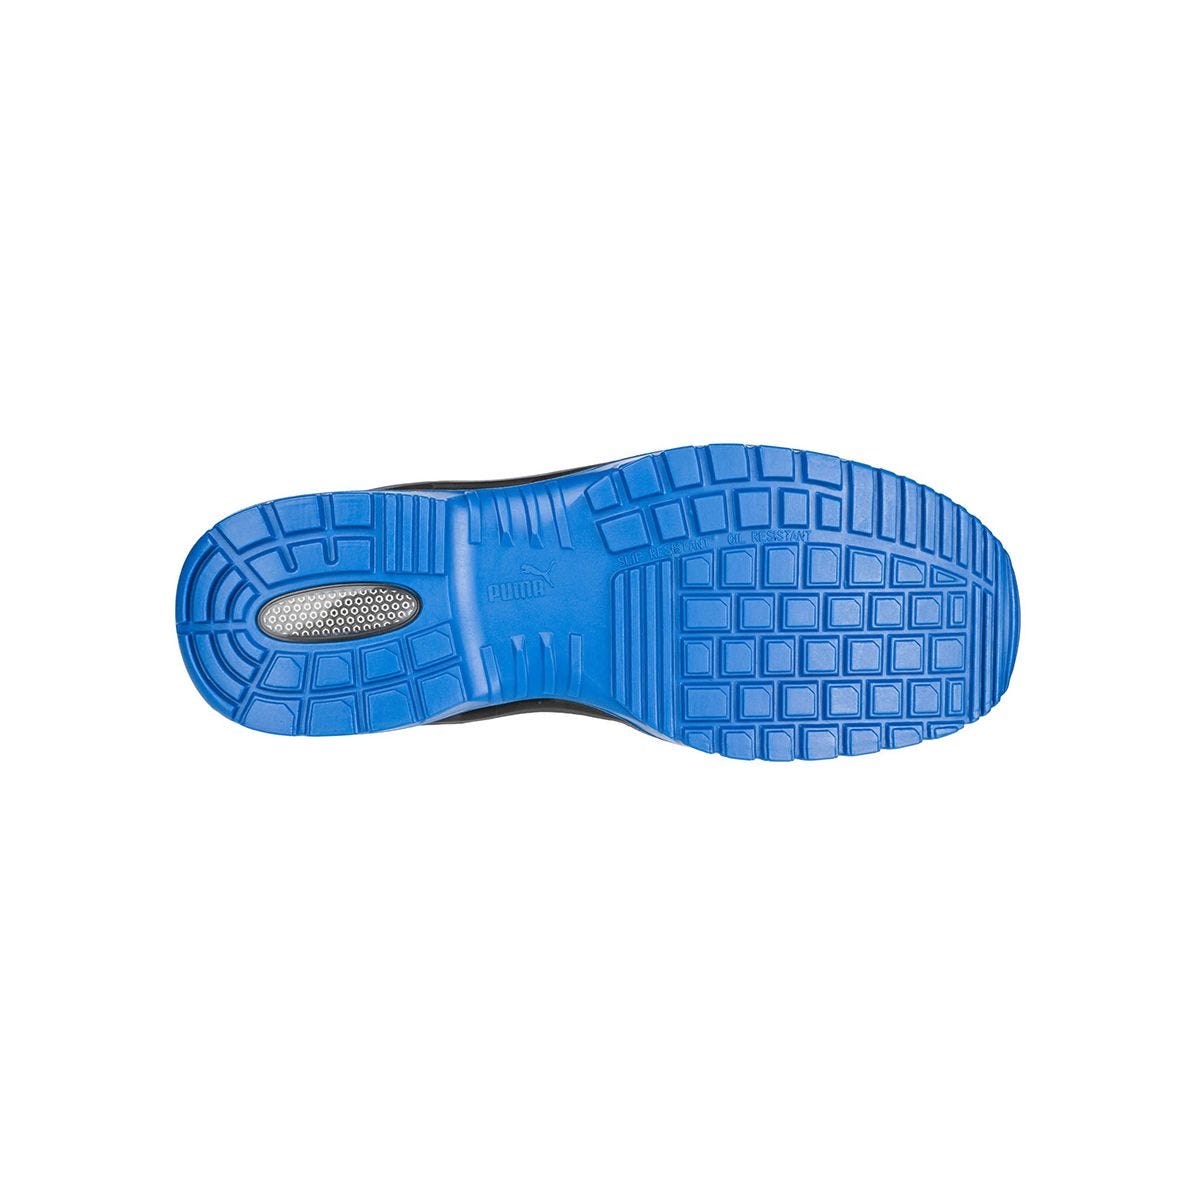 Chaussures de sécurité Argon RX low S3 ESD SRC bleu - Puma - Taille 40 3